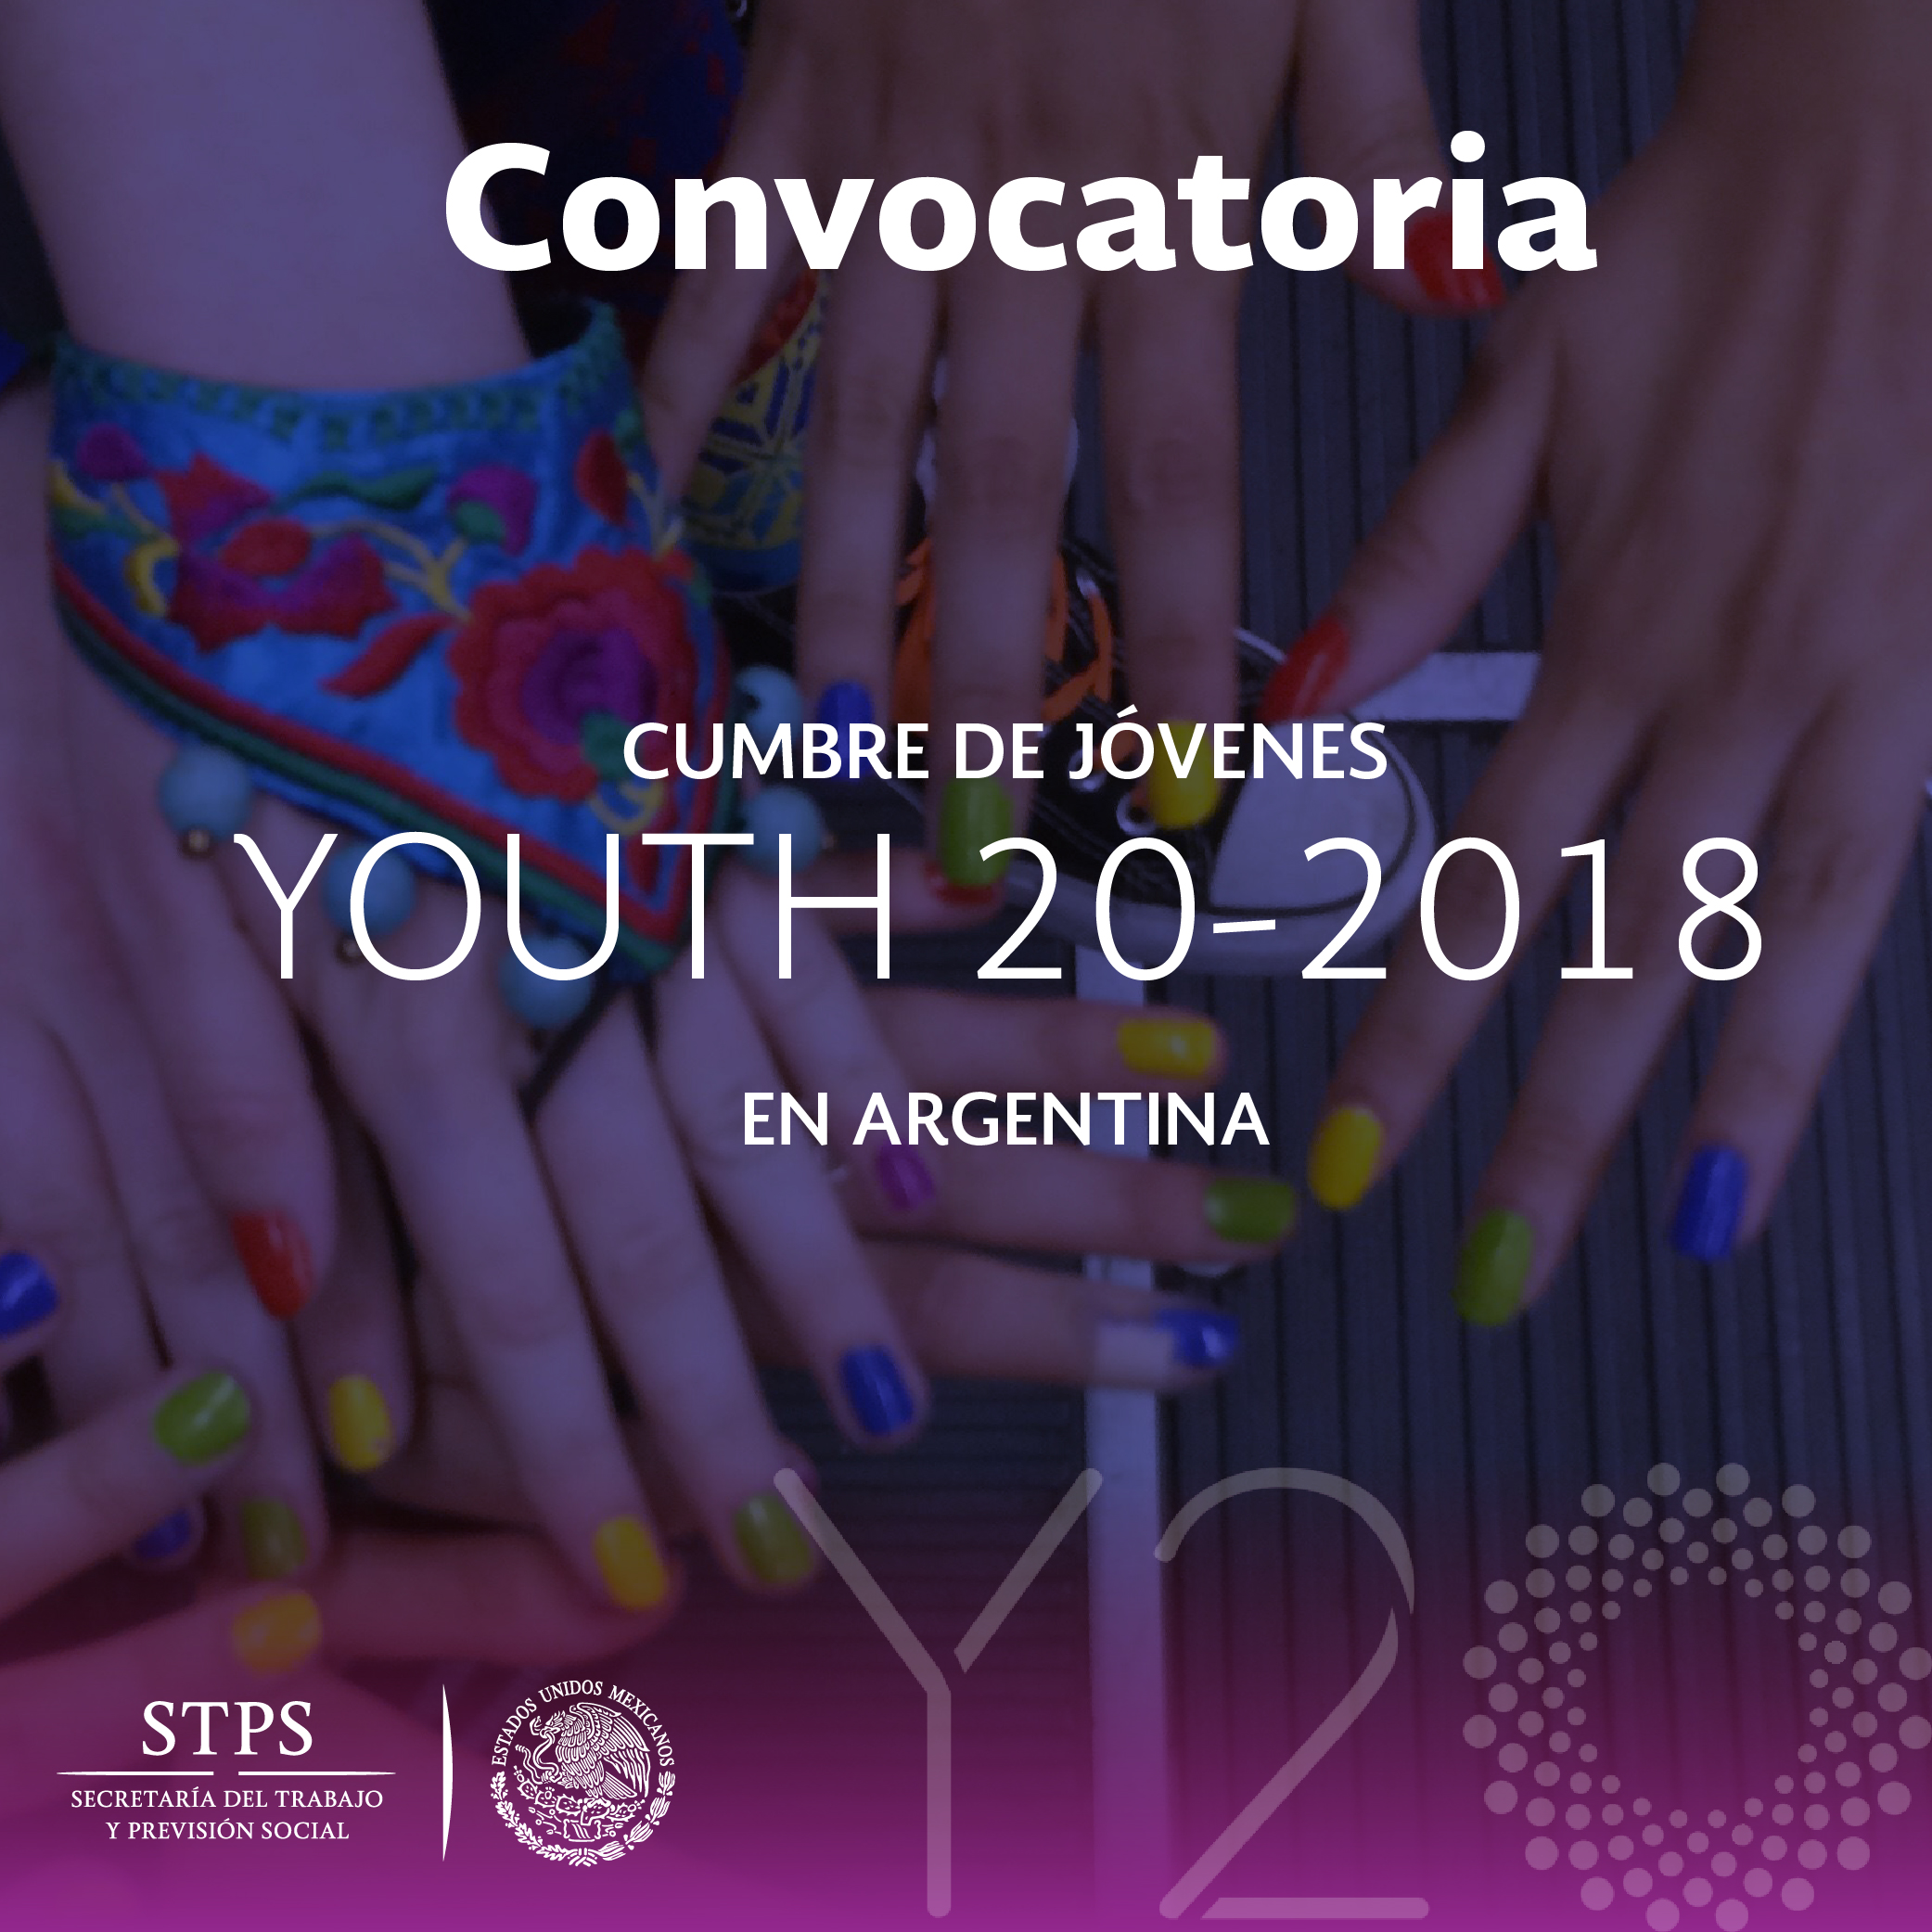 Manos de jóvenes que representan a los posibles delegados que México enviará a la Cumbre de Jóvenes Youth 20-2018 en Argentina